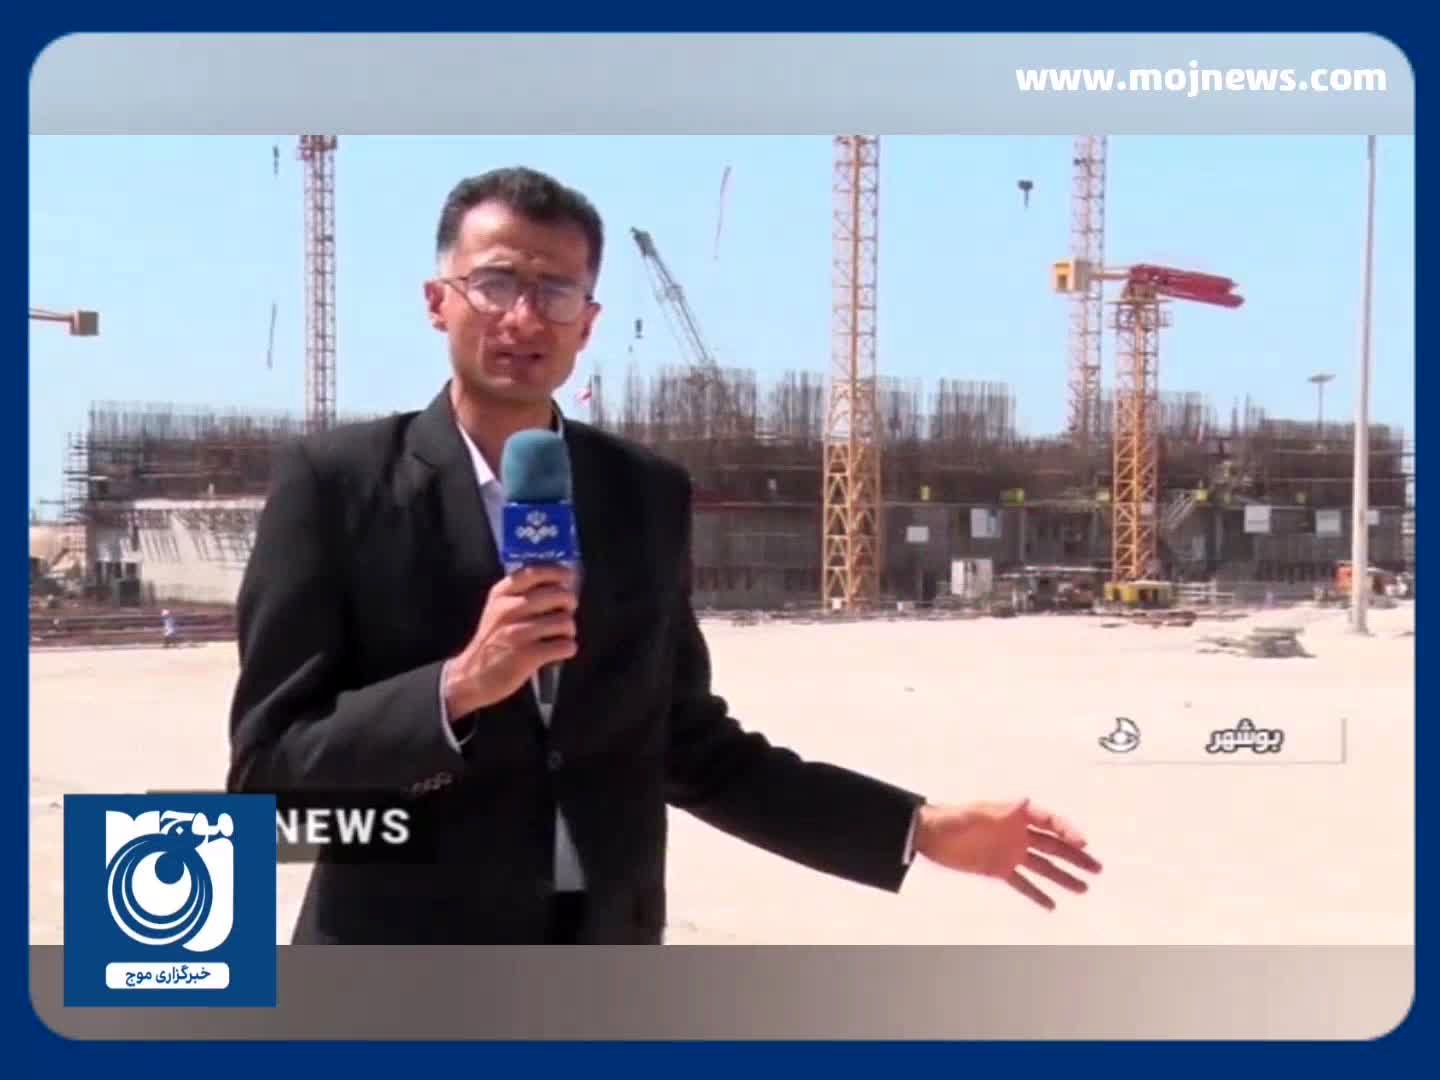  ساخت واحد جدید نیروگاه اتمی بوشهر + فیلم